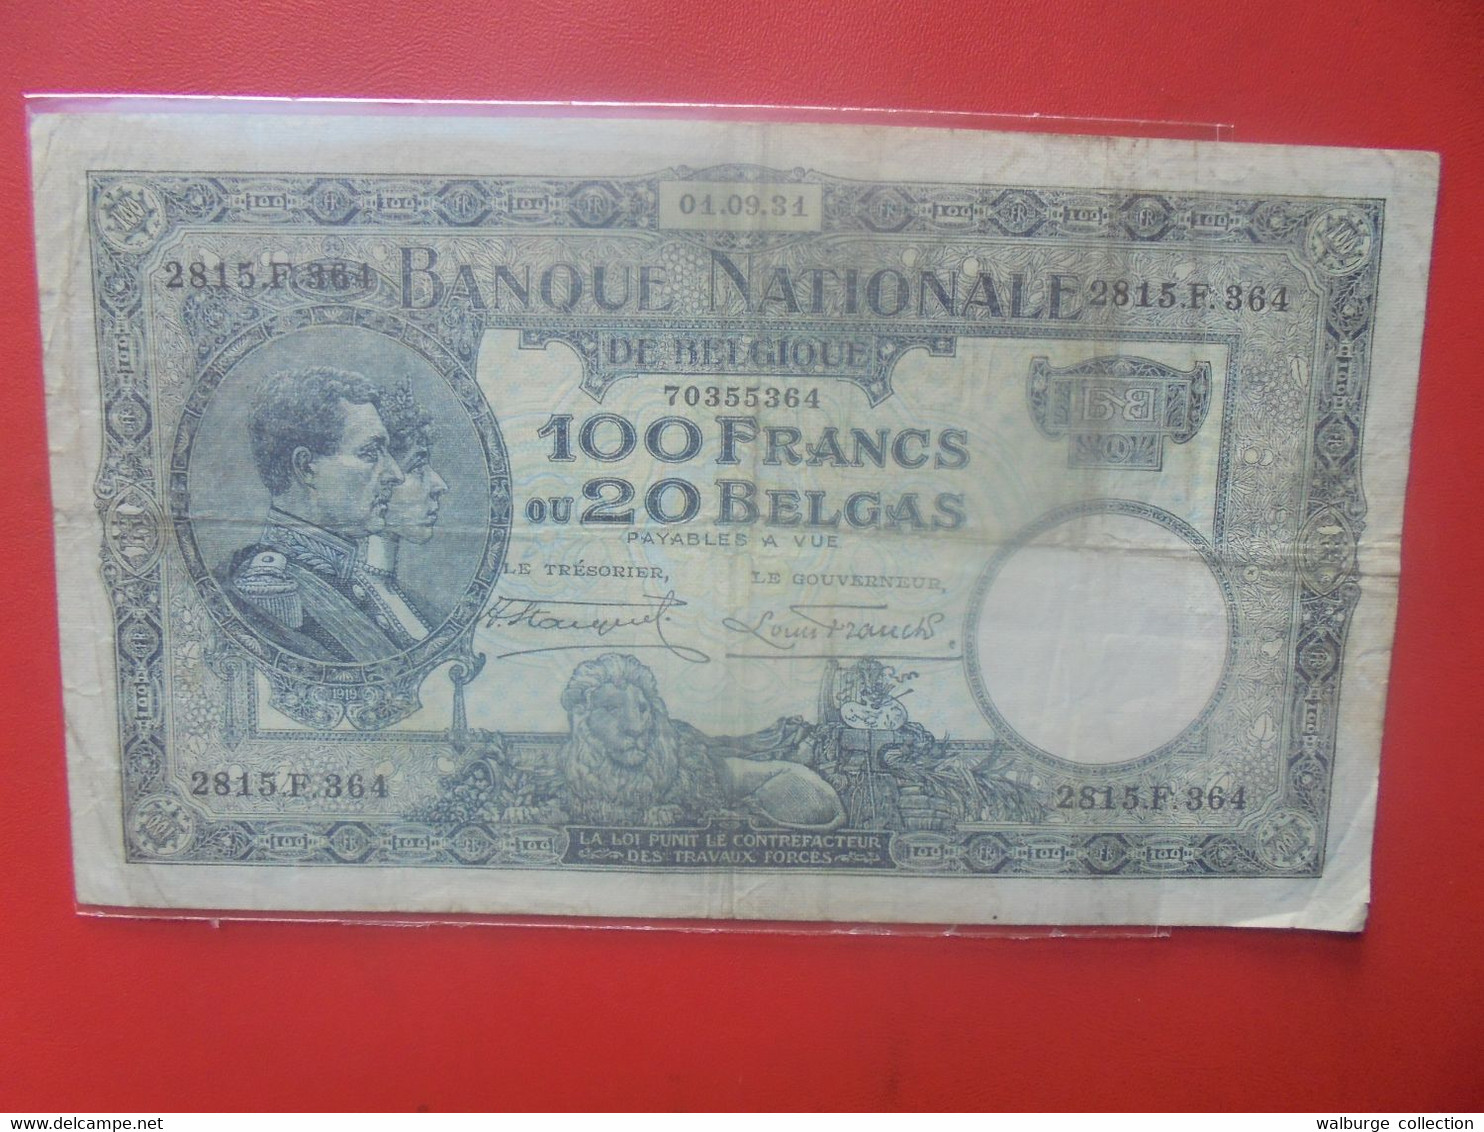 BELGIQUE 100 FRANCS 1-9-31 Circuler (B.26) - 100 Francos & 100 Francos-20 Belgas